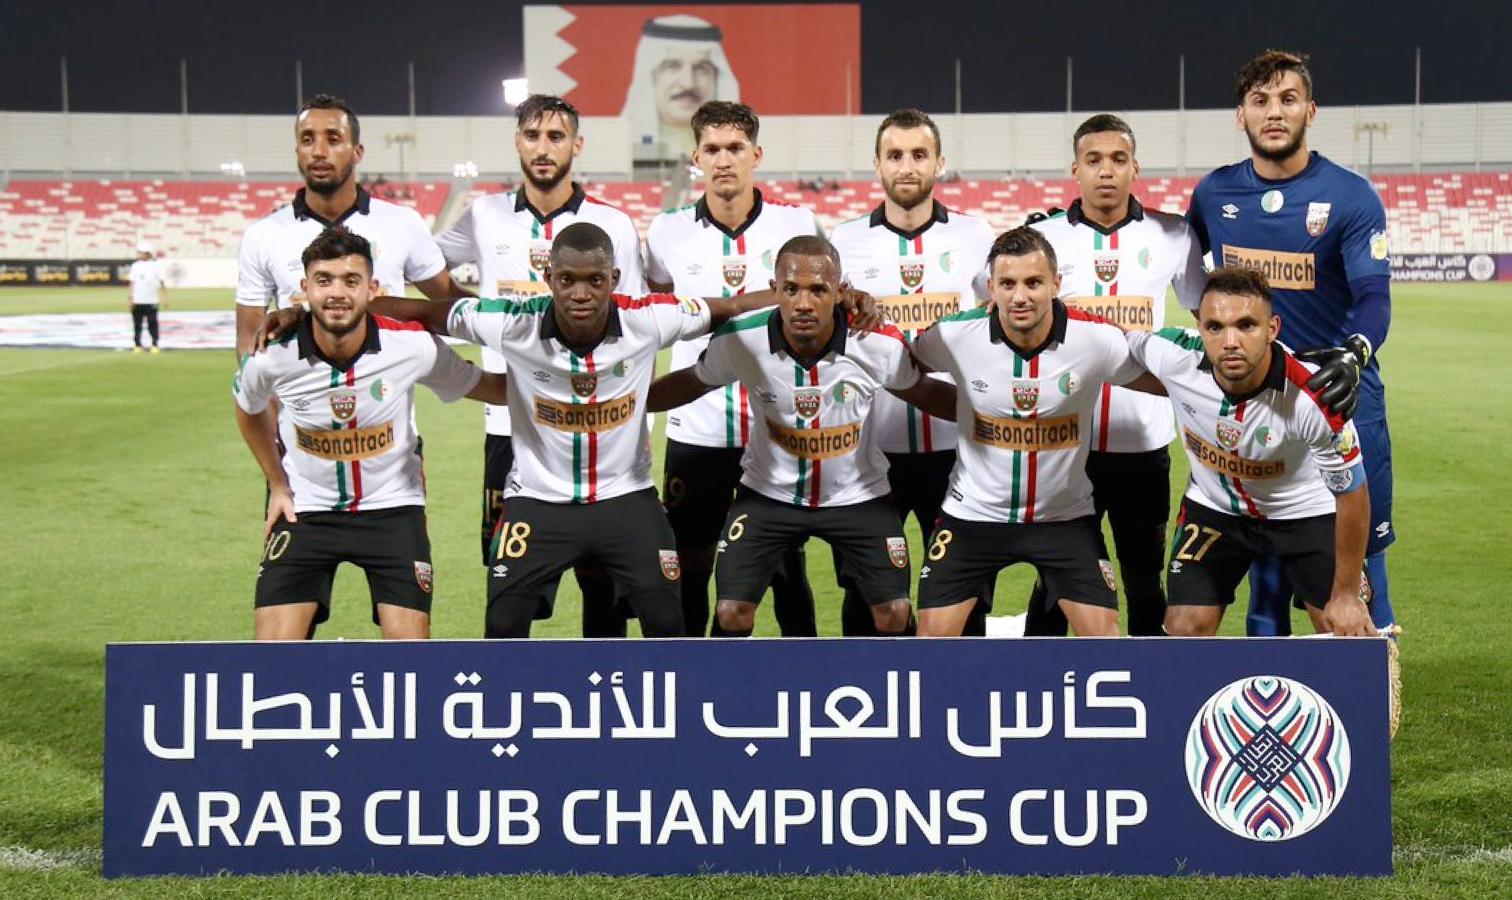 Аль риффа. Arab chempion. Arab Club Champions Cup. Arab Champions Cup. Arab Club.